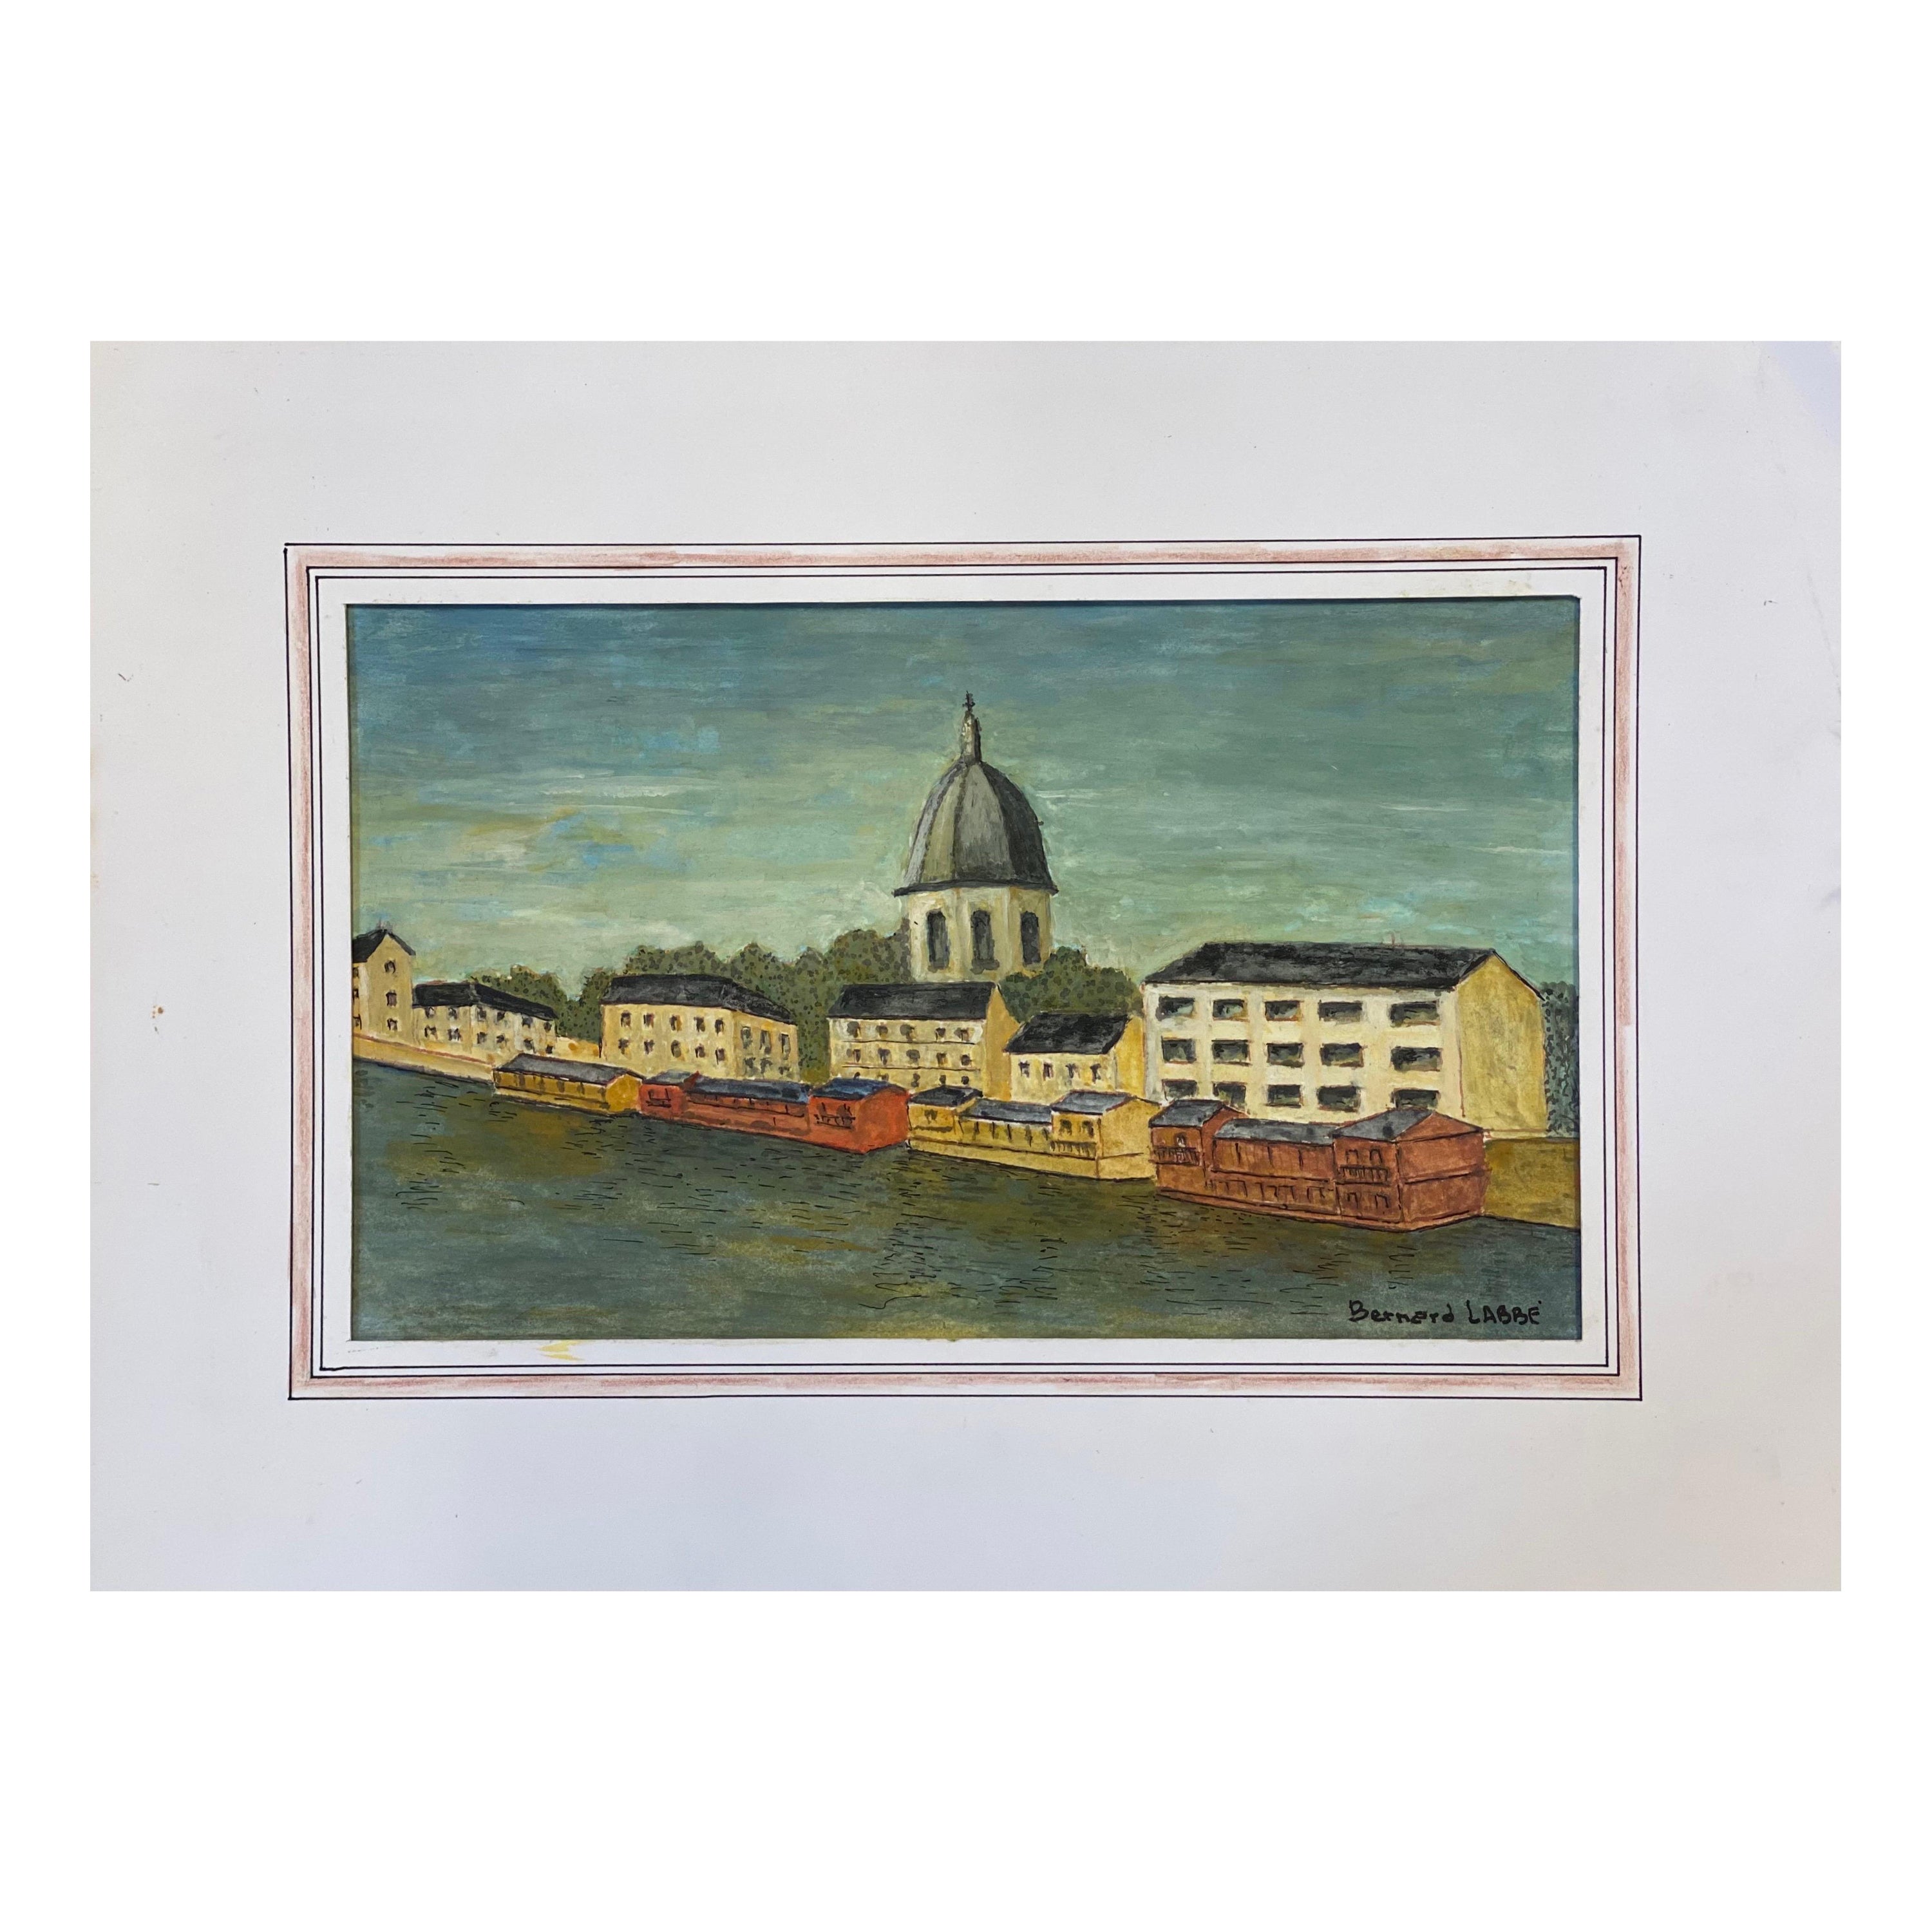 Peinture moderniste/ cubiste française des années 1950, paysage français par la rivière